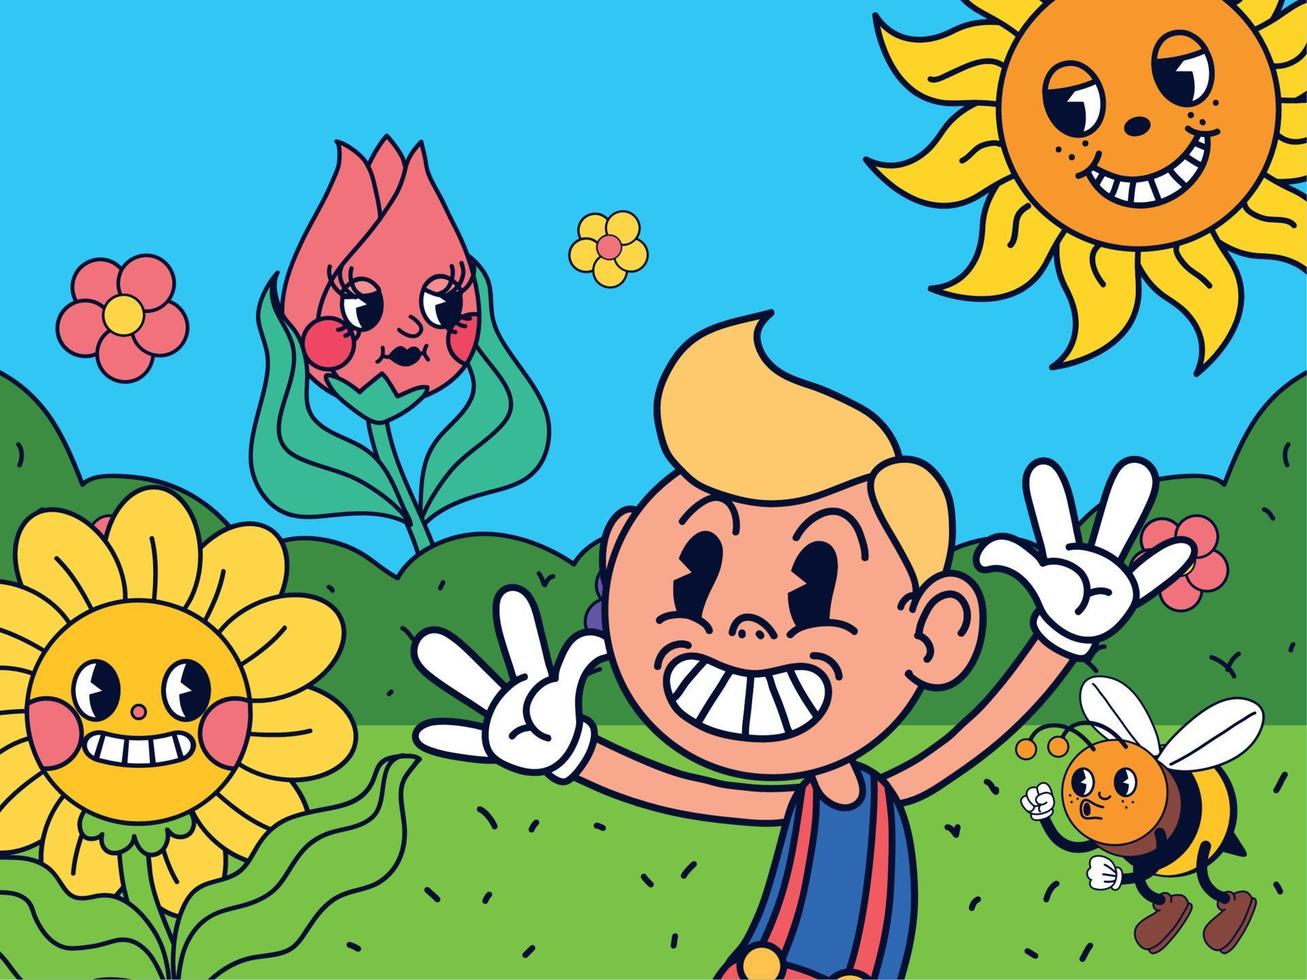 tekenfilm jongen en bloemen vector